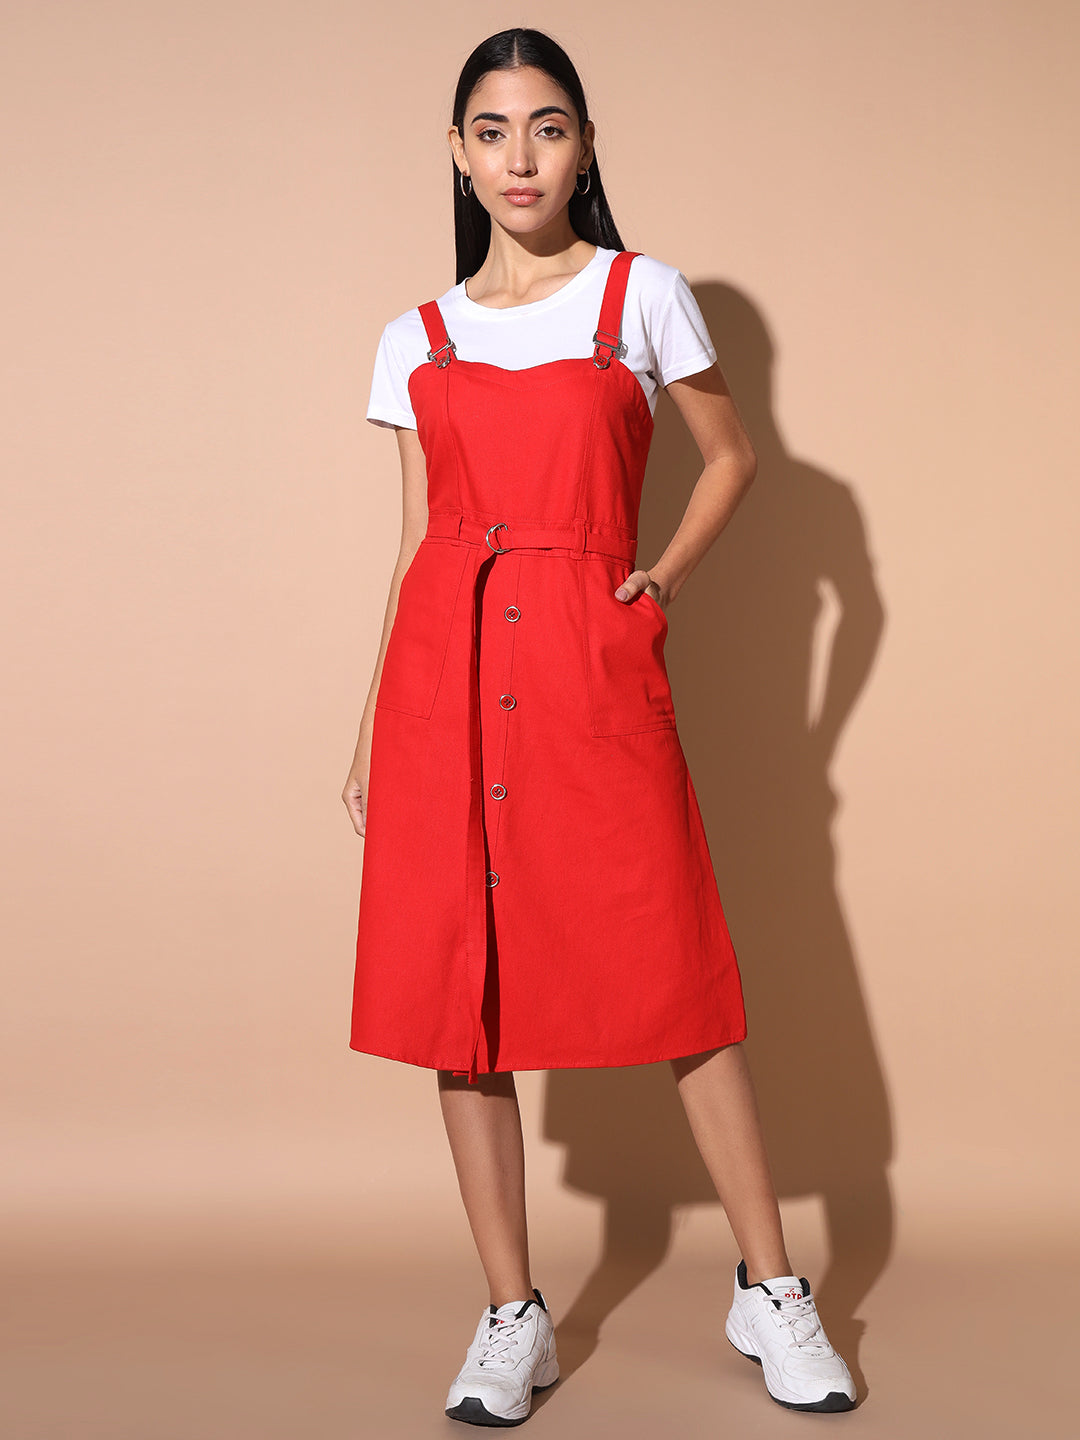 Glamoda A-Line Red Dress